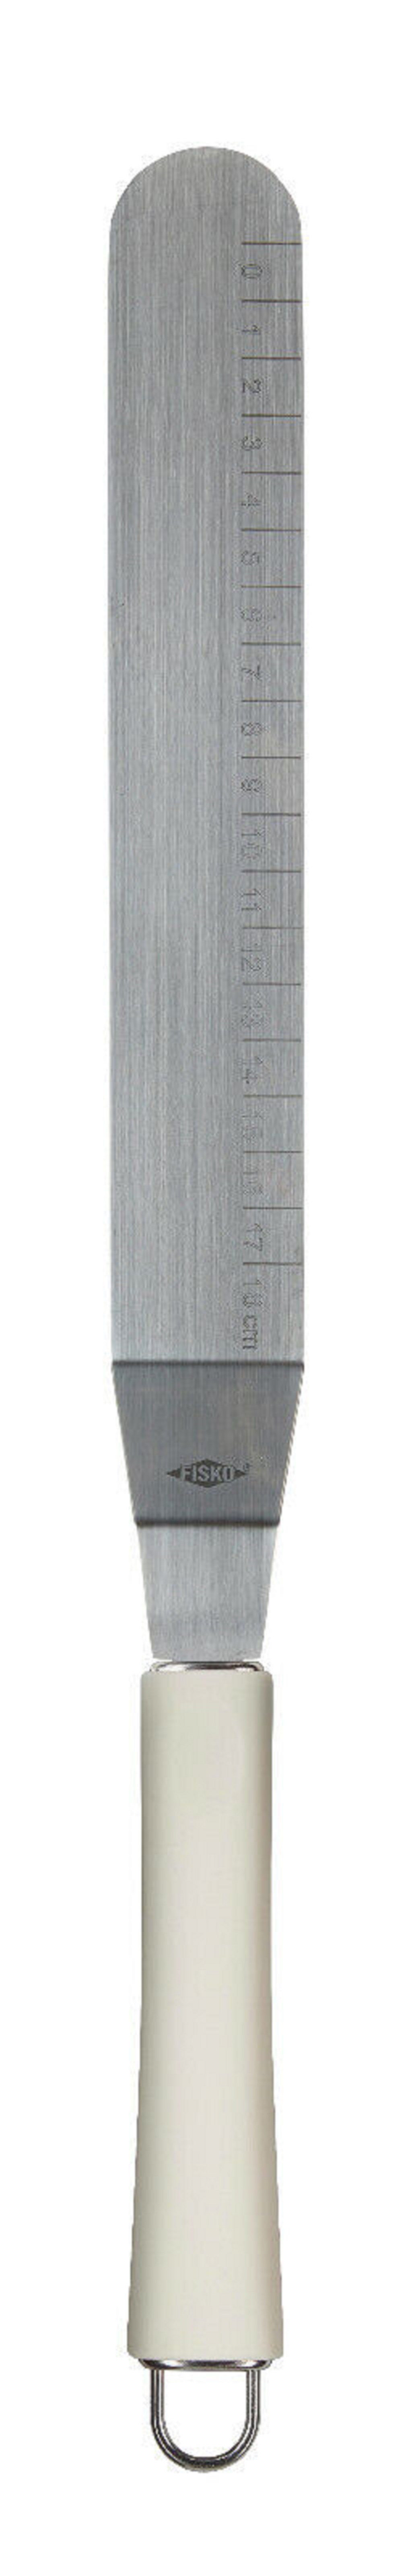 ALPFA Tortenmesser Edelstahl 32 weiß Schaber cm, aus Spachtel Edelstahl rostfreiem Glasurmesser Streichpalette